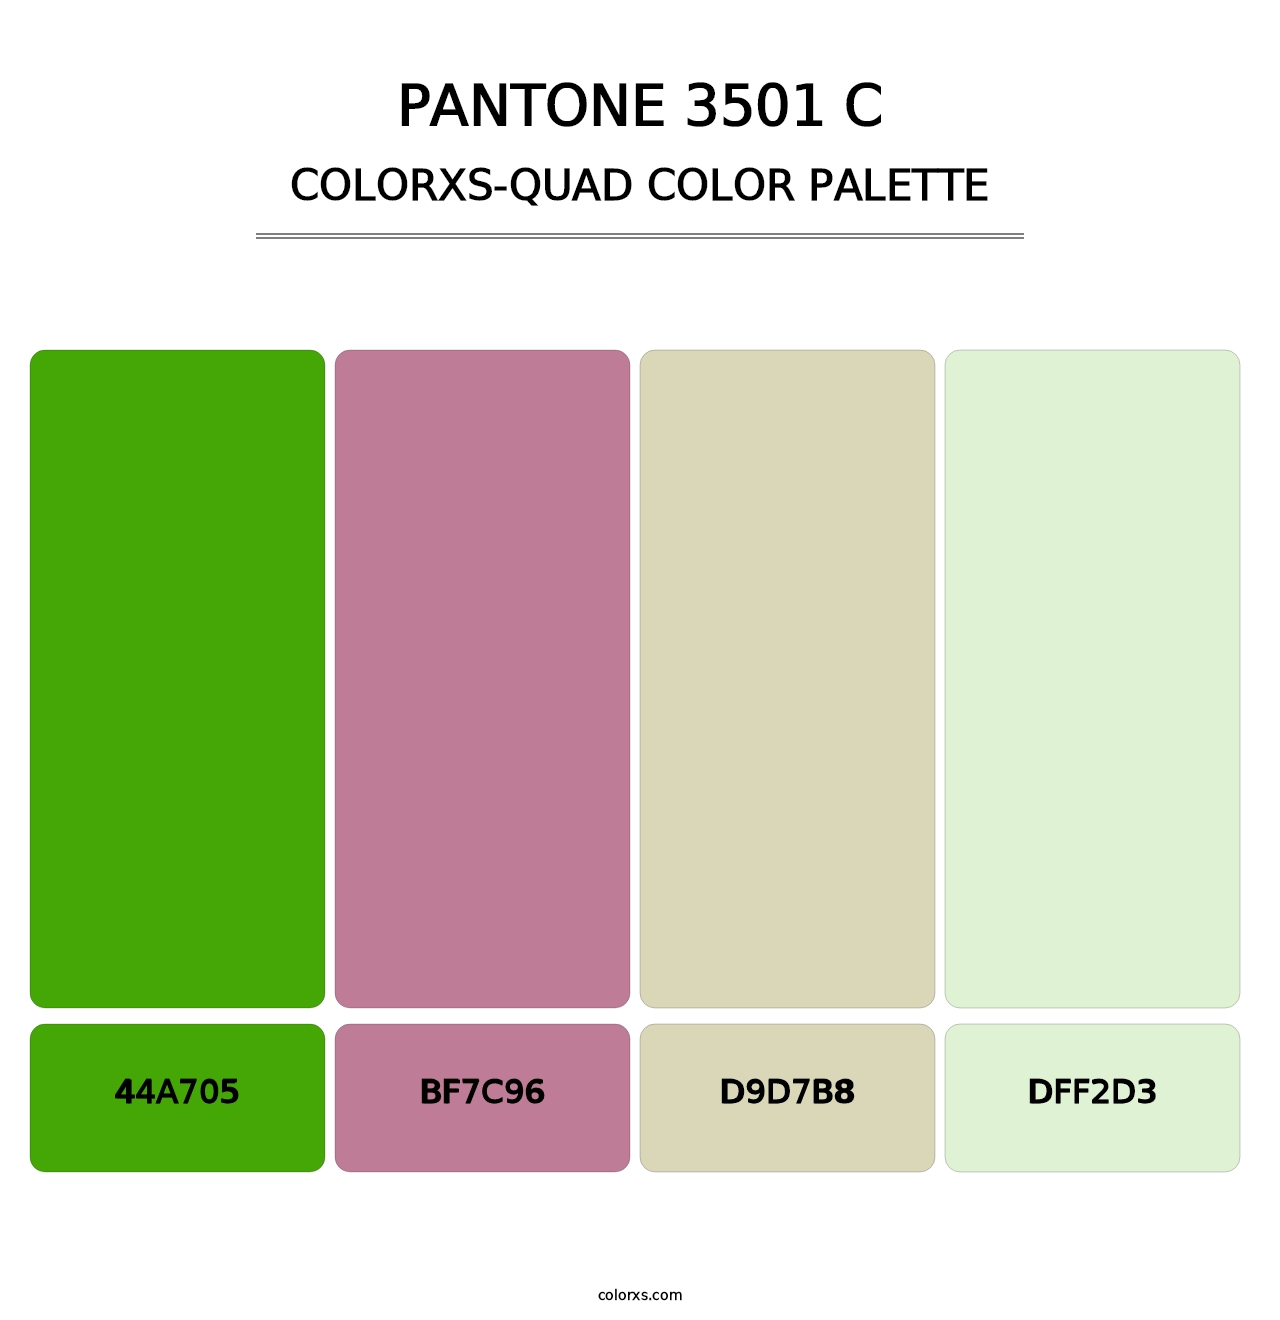 PANTONE 3501 C - Colorxs Quad Palette